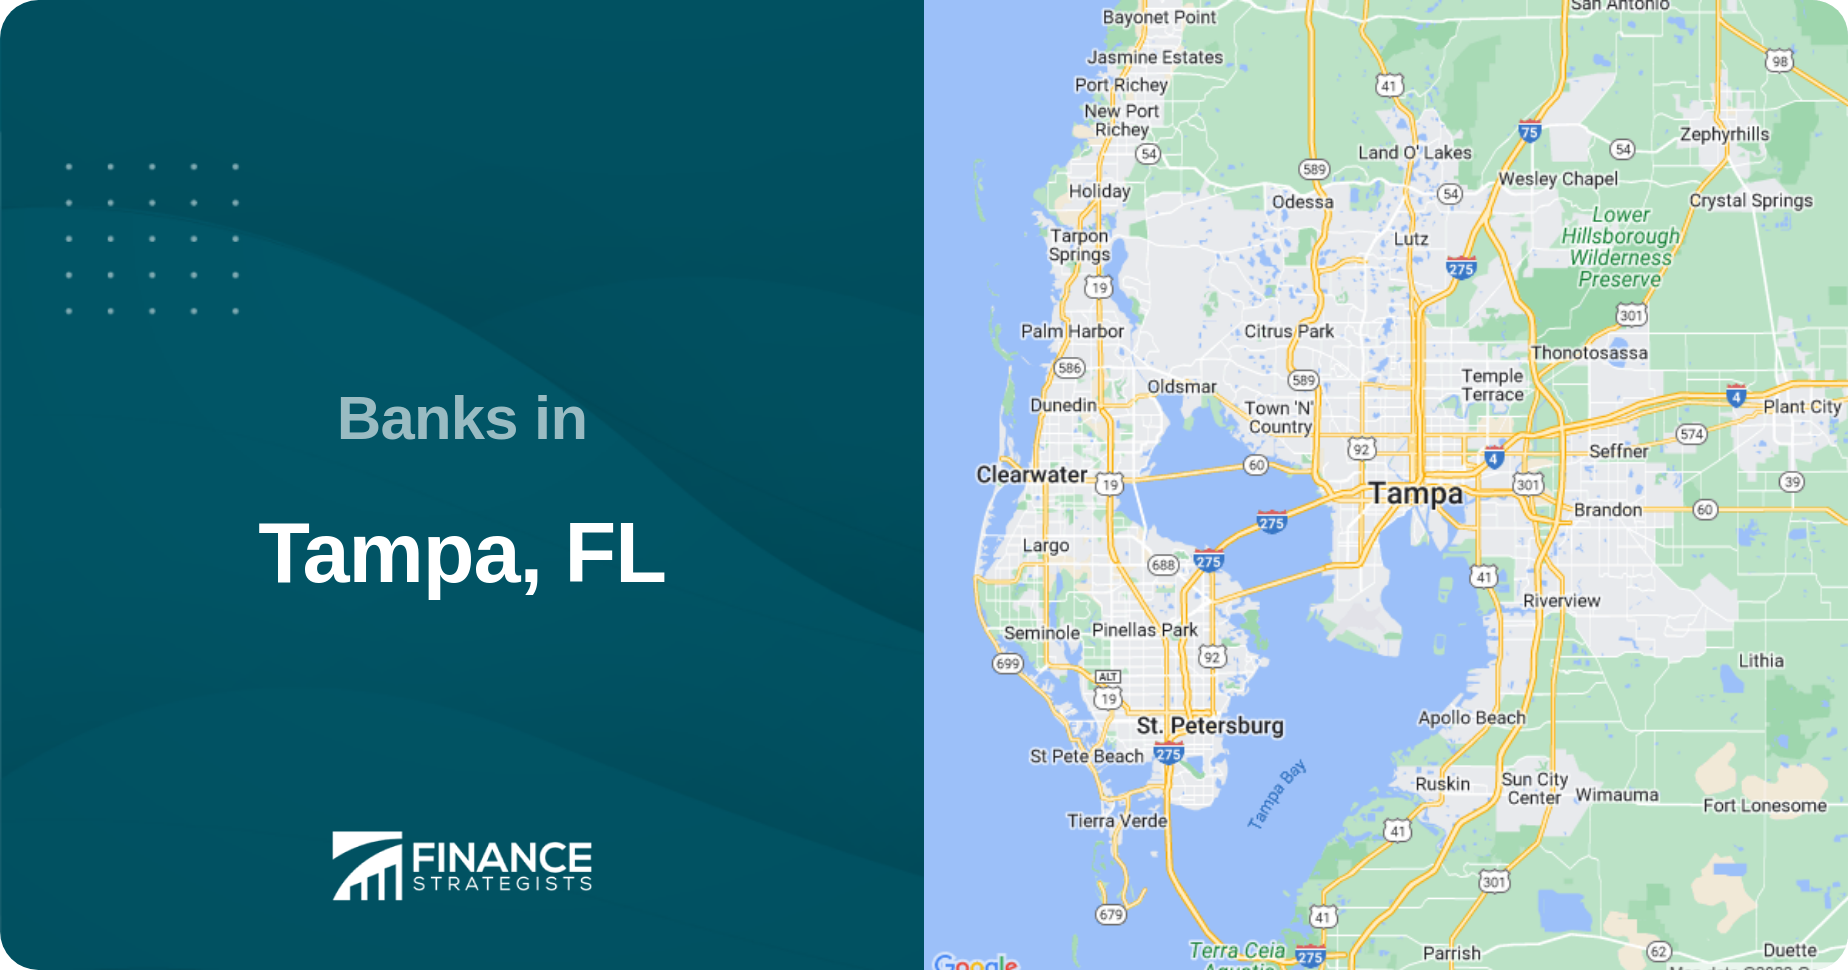 Banks in Tampa, FL